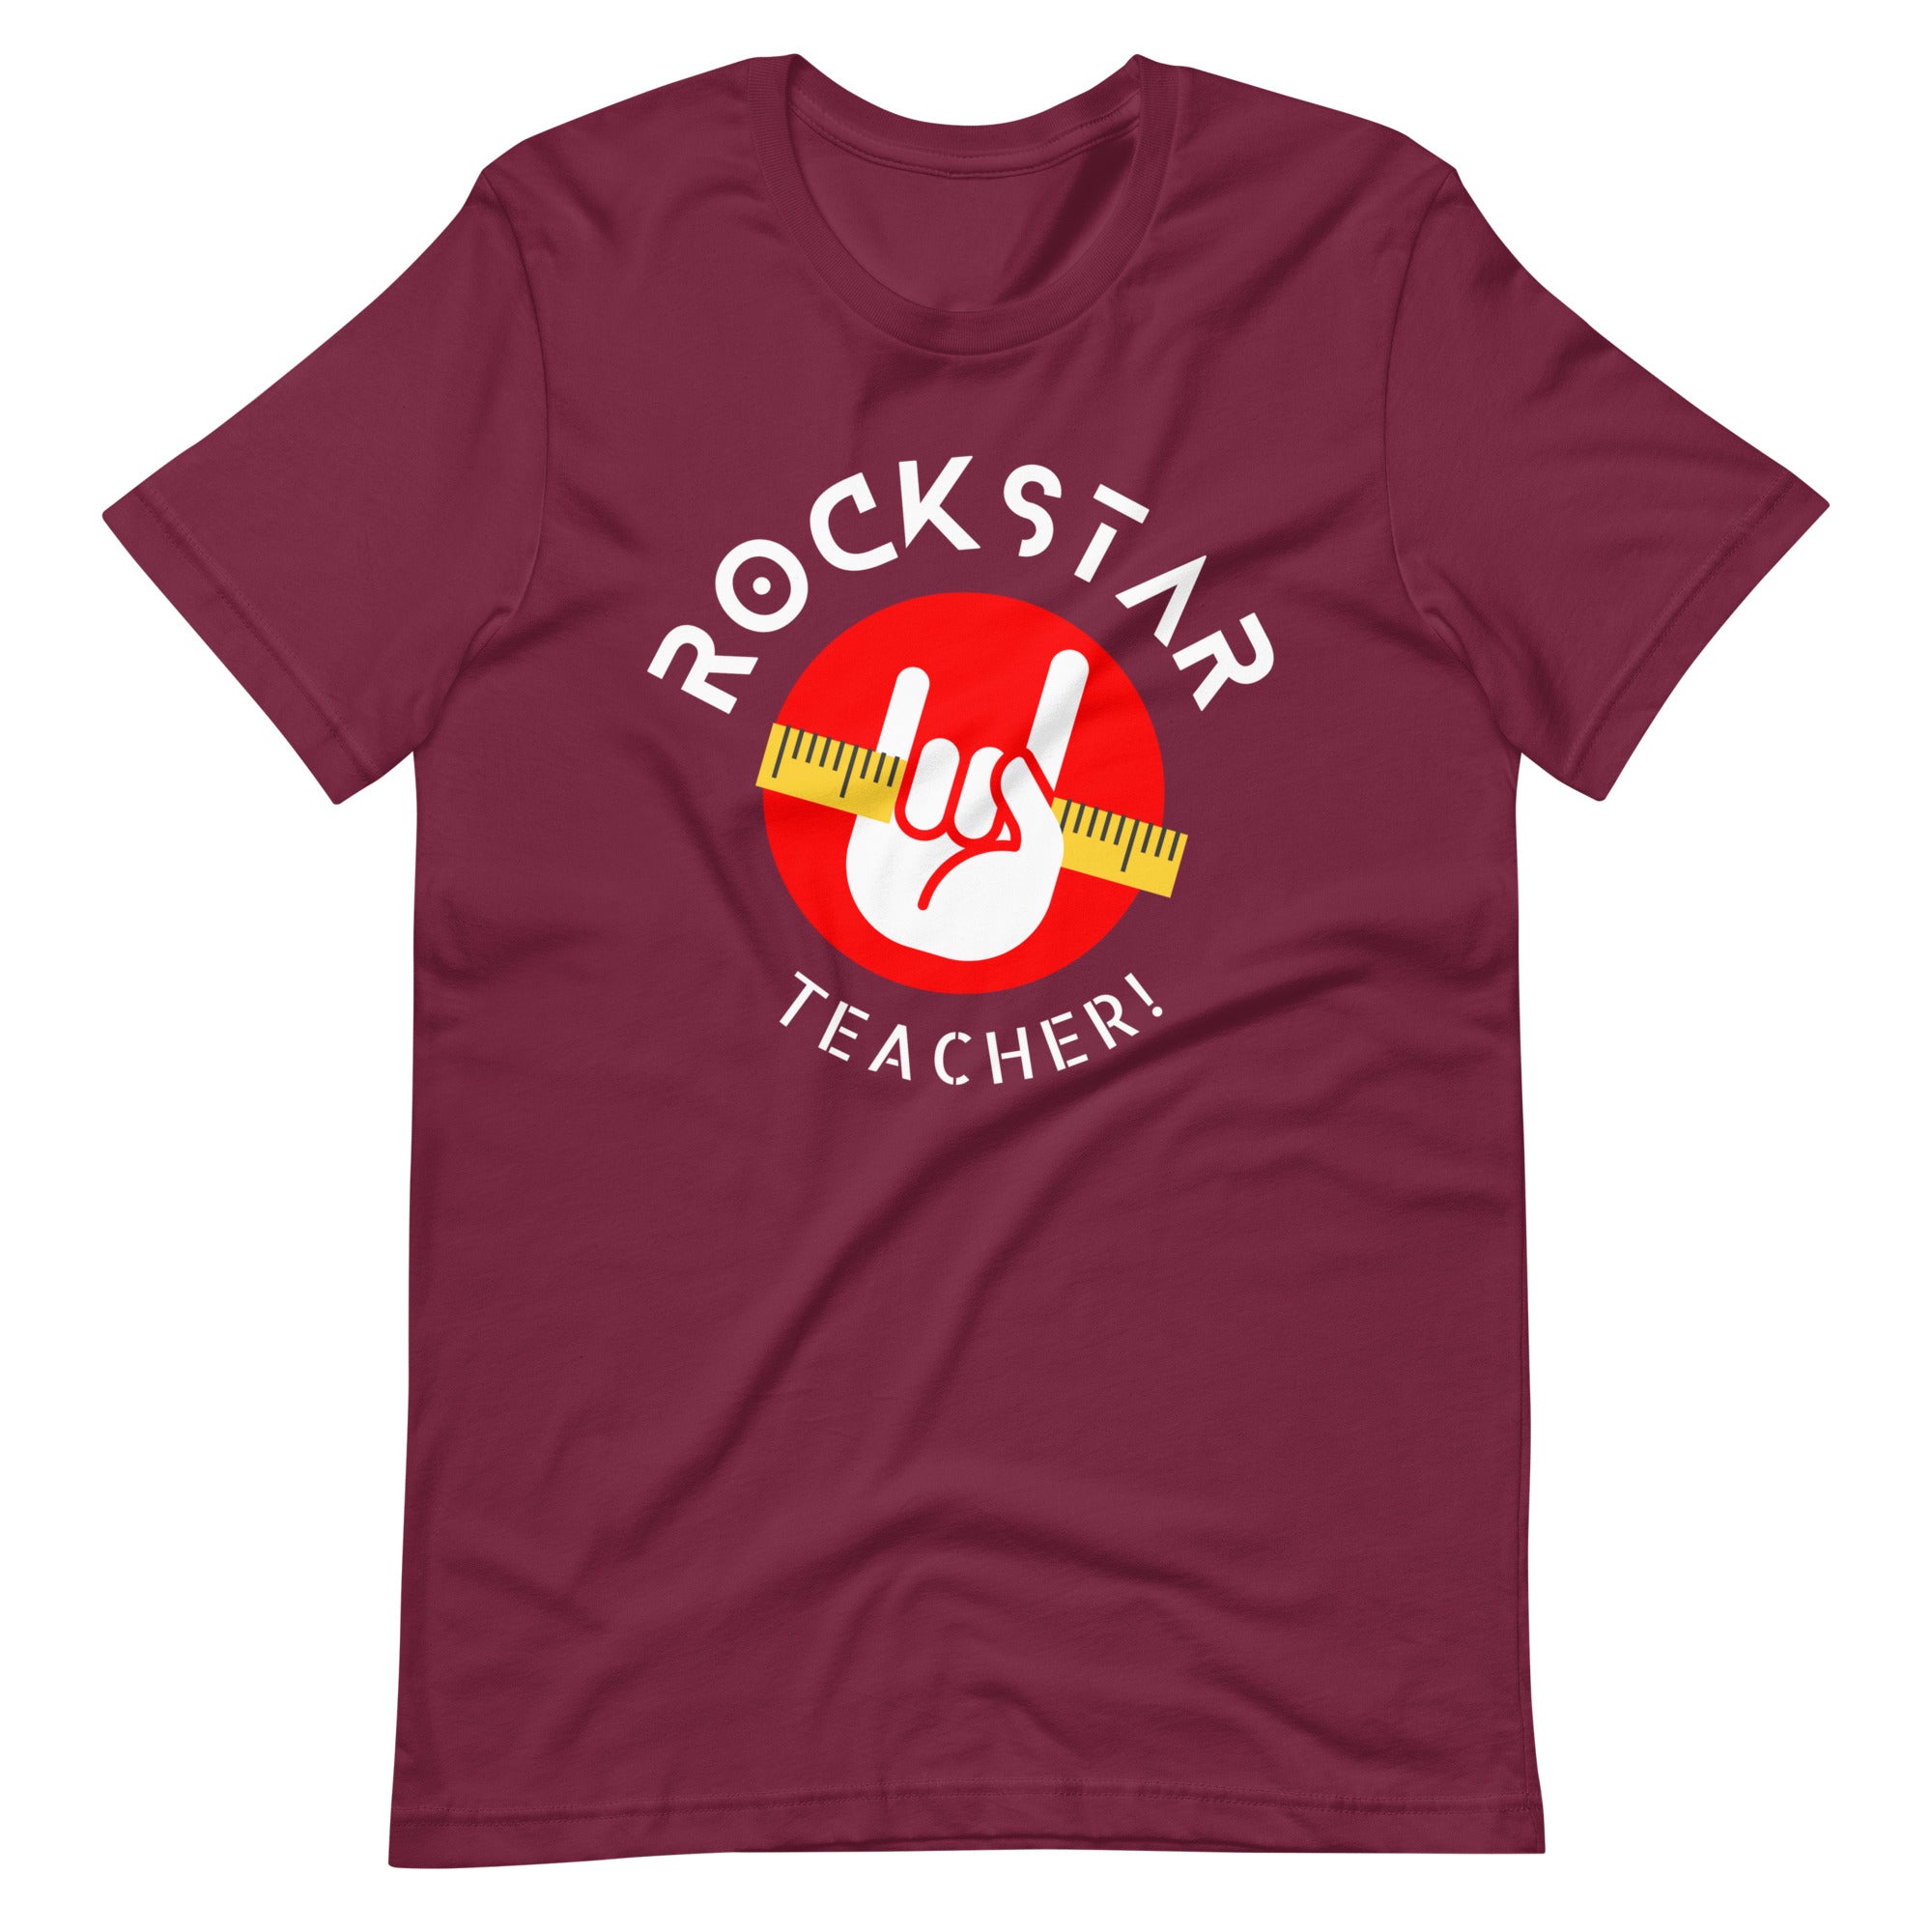 Rockstar Teacher Shirt Maroon / XL